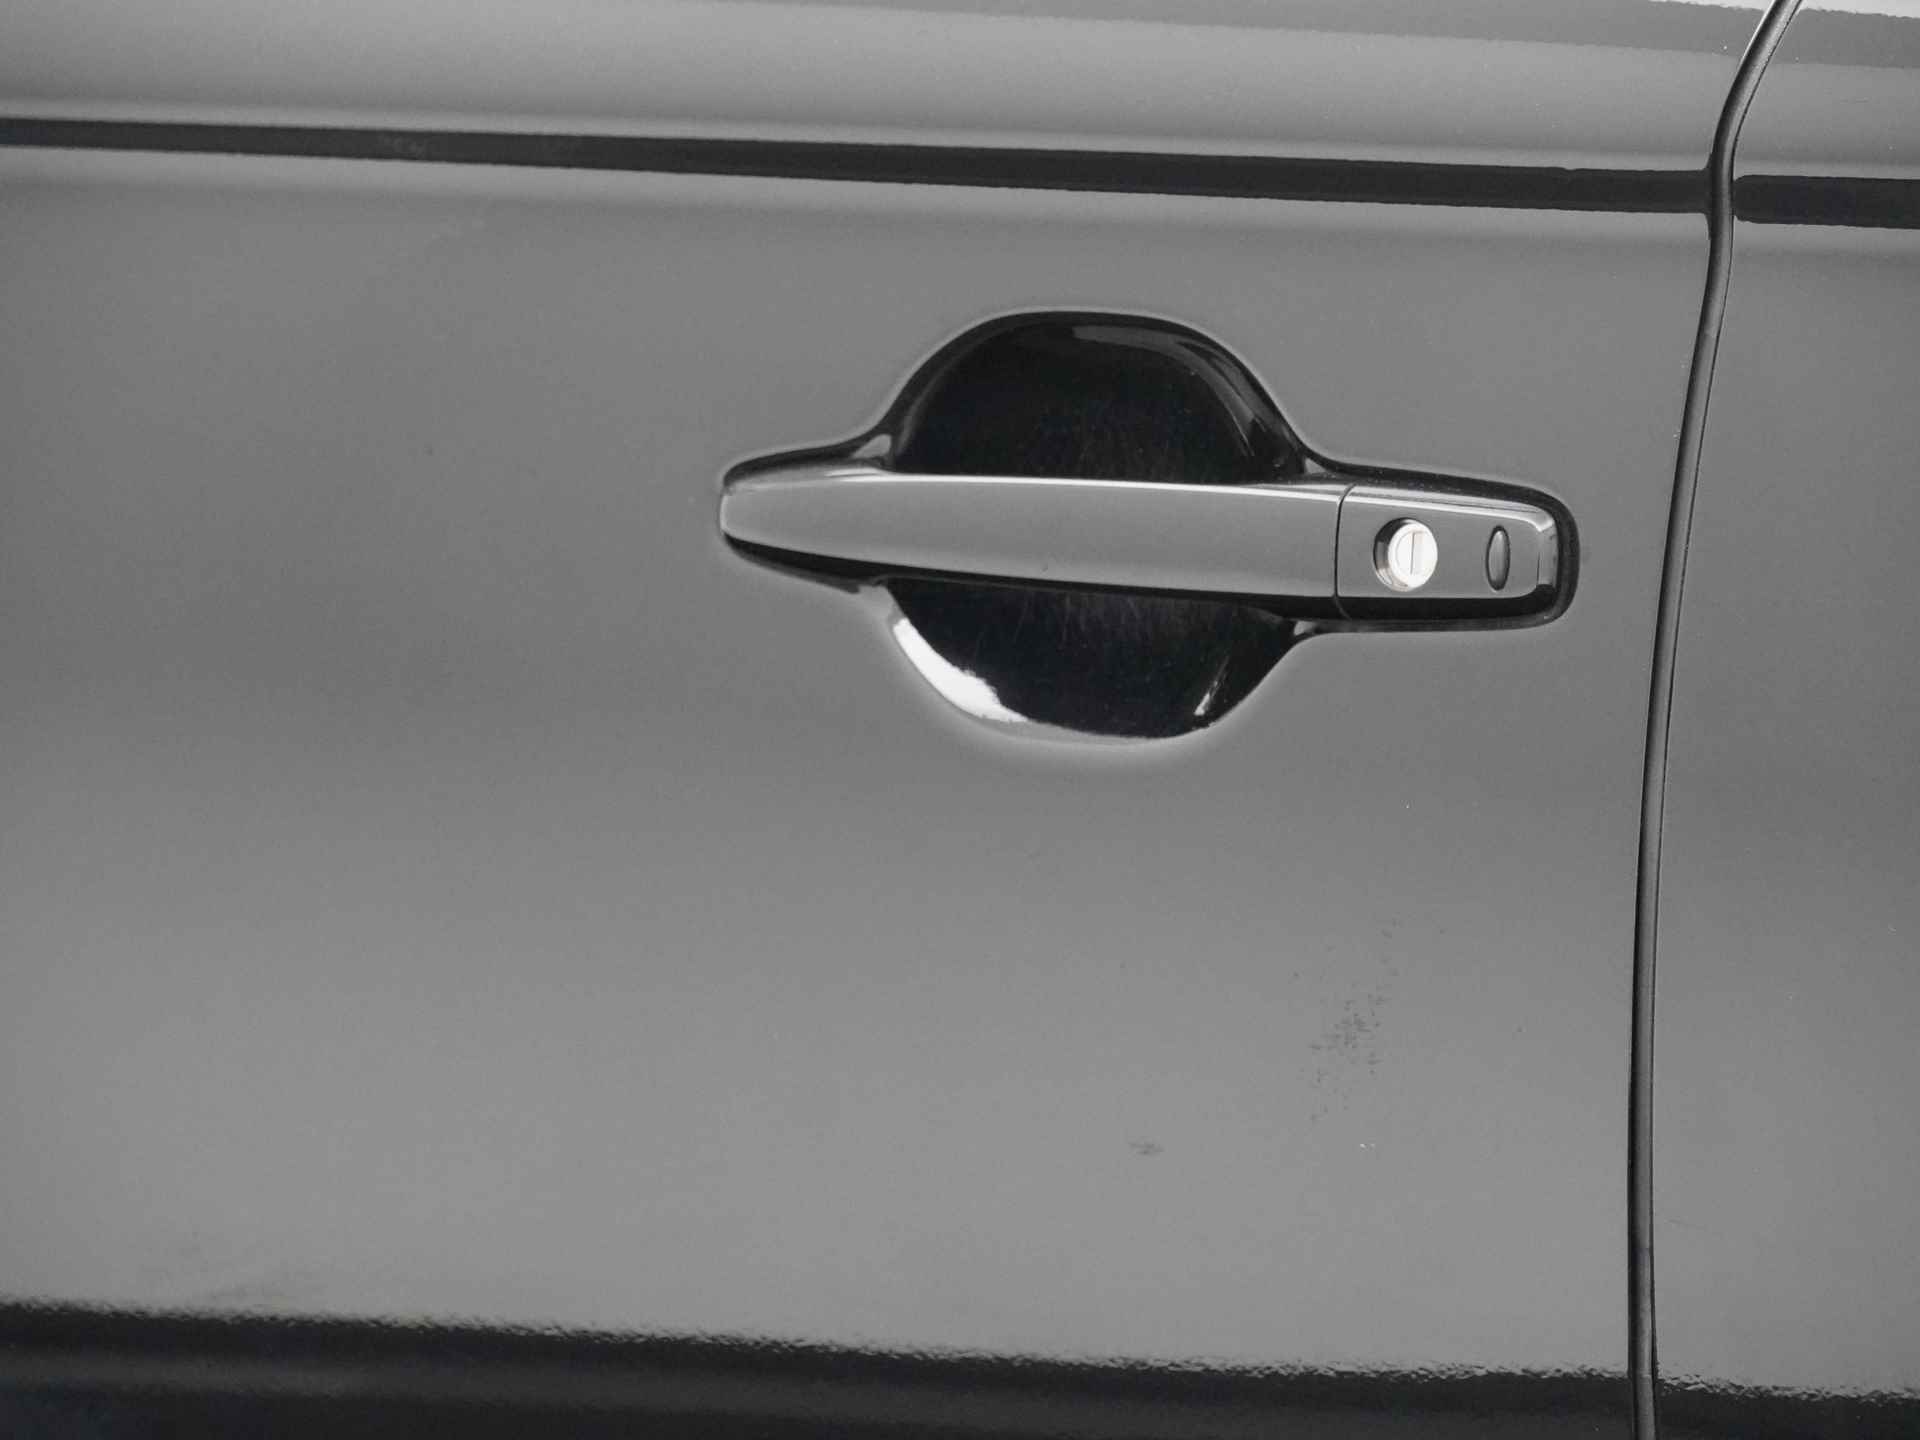 Mitsubishi Outlander 2.0 Instyle+ 4WD - Schuifkanteldak - Lederen bekleding - Voorraam verwarming - Apple CarPlay / Android Auto - Elektrische achterklep - 12 Maanden bovag garantie - 18/48